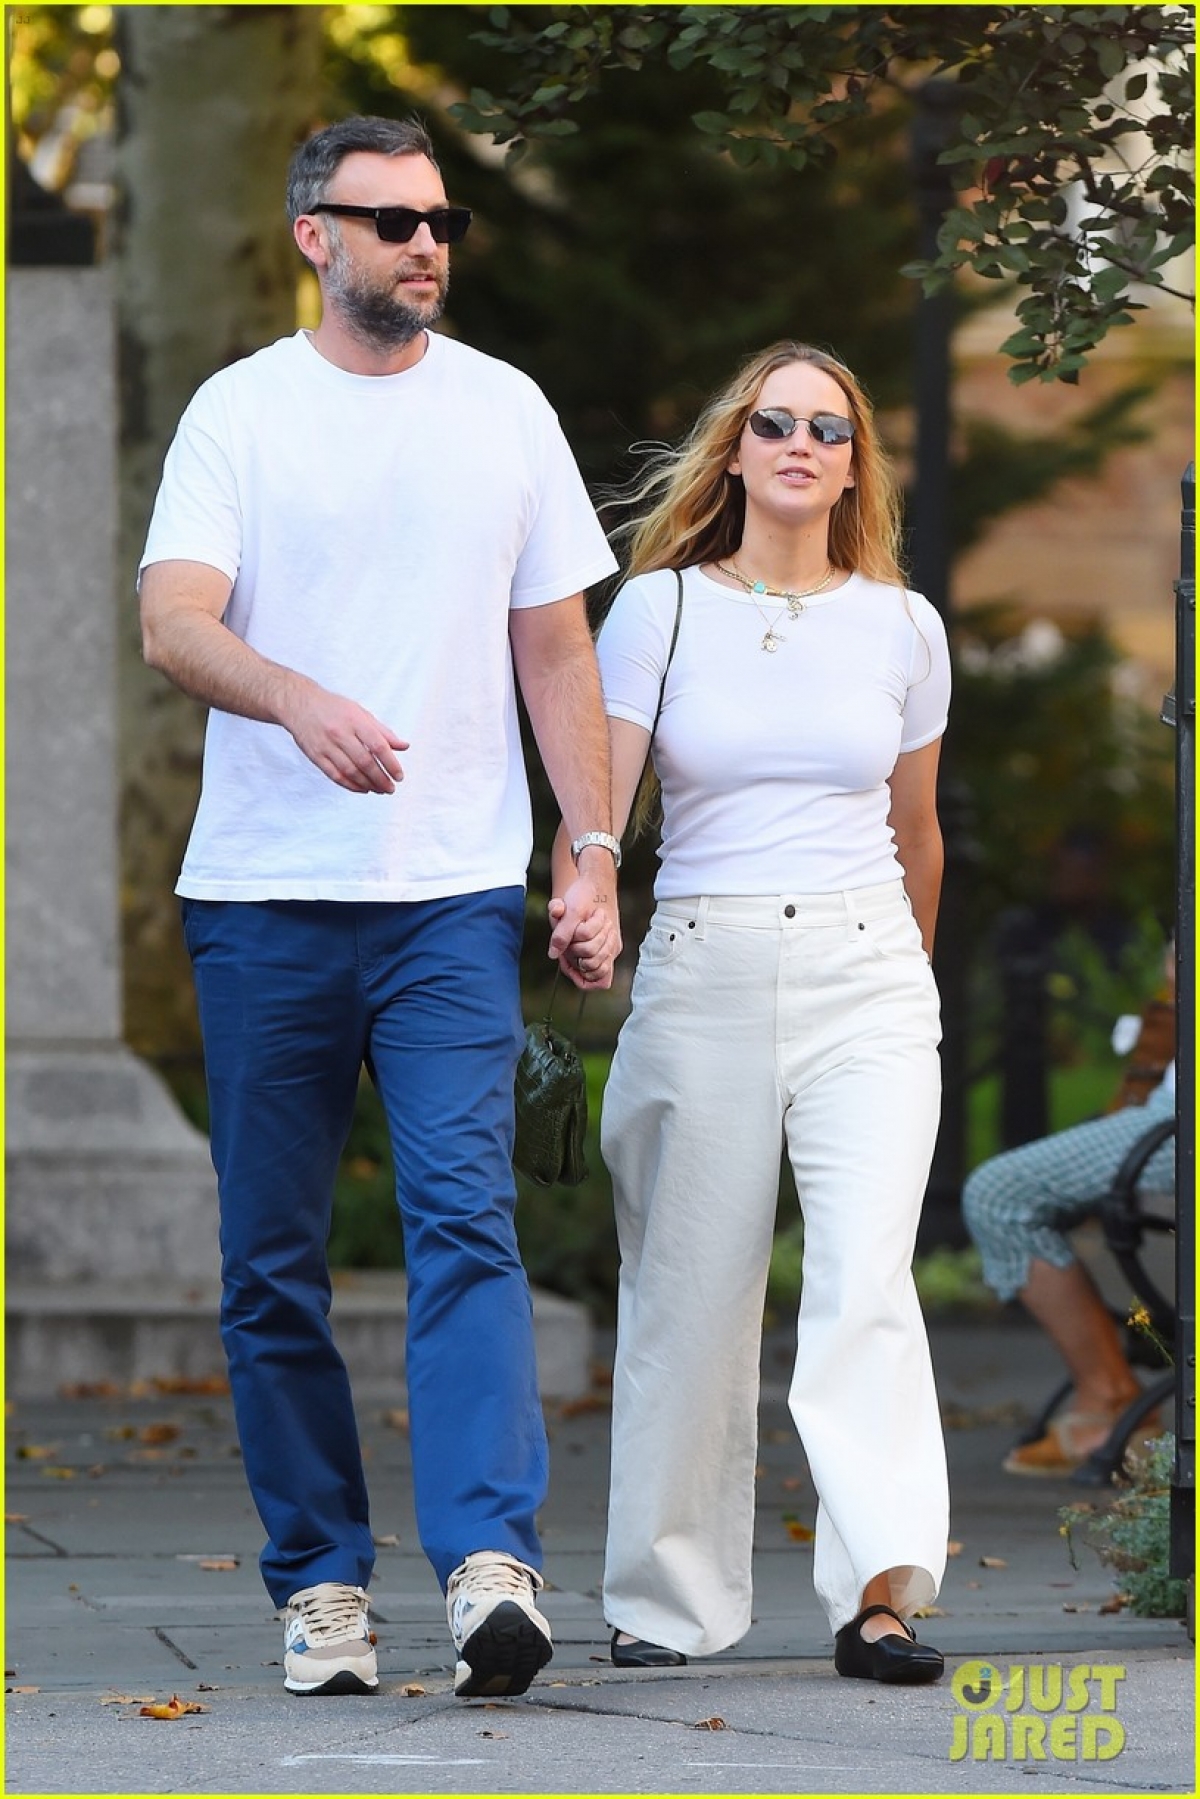 Vợ chồng Jennifer Lawrence diện đồ đồng điệu, tình tứ đi dạo trong công viên - Ảnh 1.